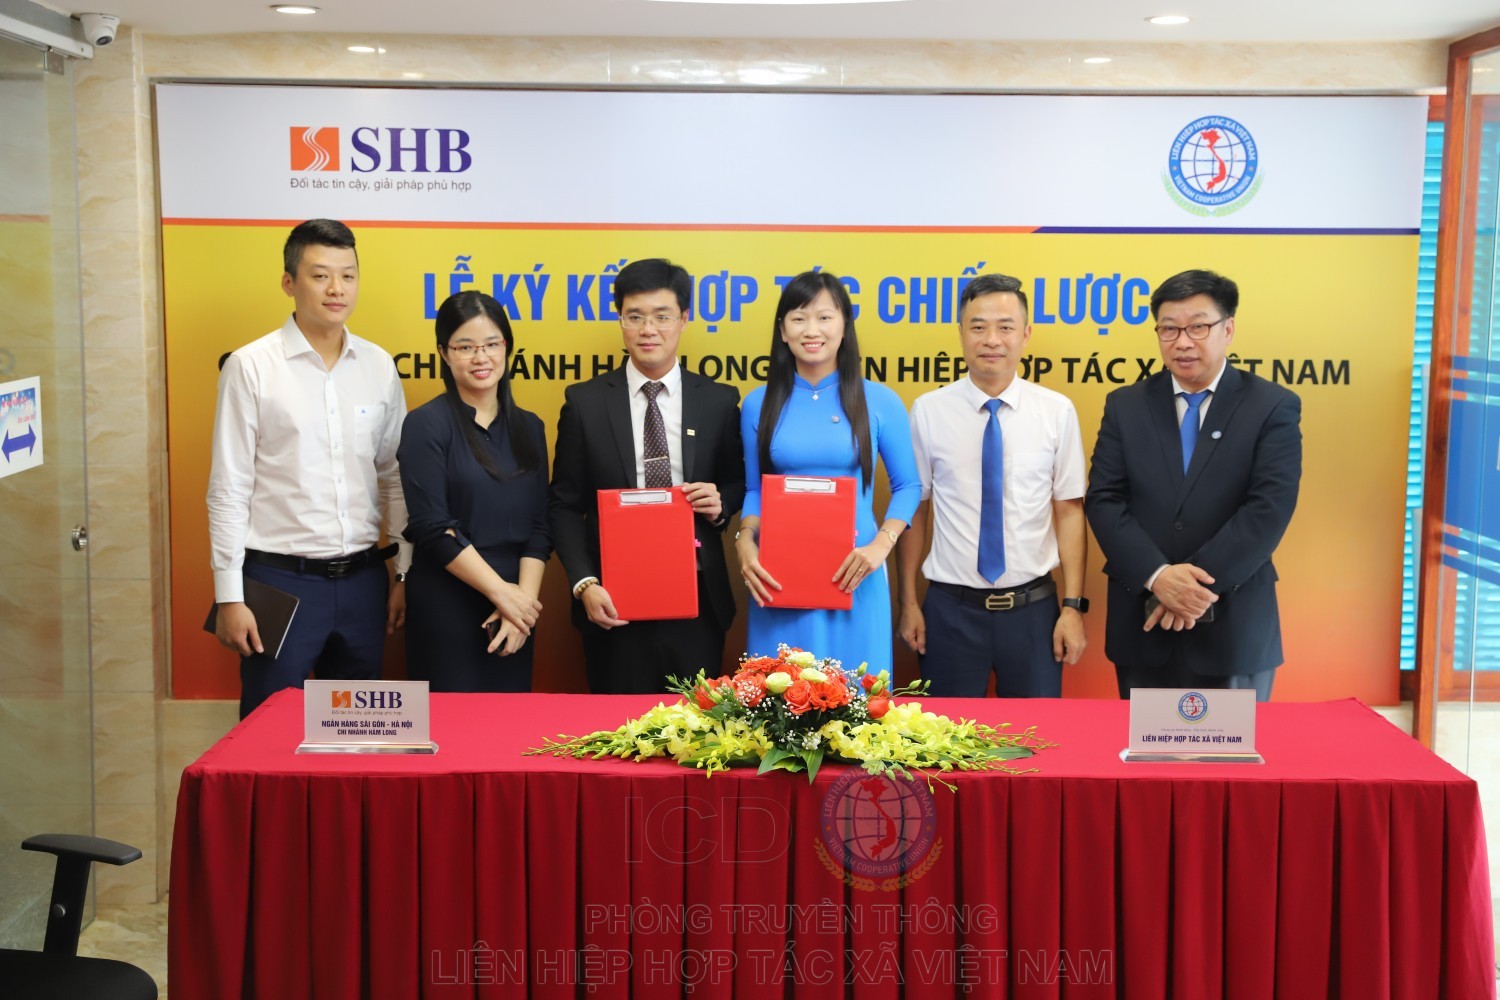 Liên Hiệp Hợp tác xã Việt Nam và SHB chi nhánh Hàm Long chung tay hành động, tiếp bước thành công